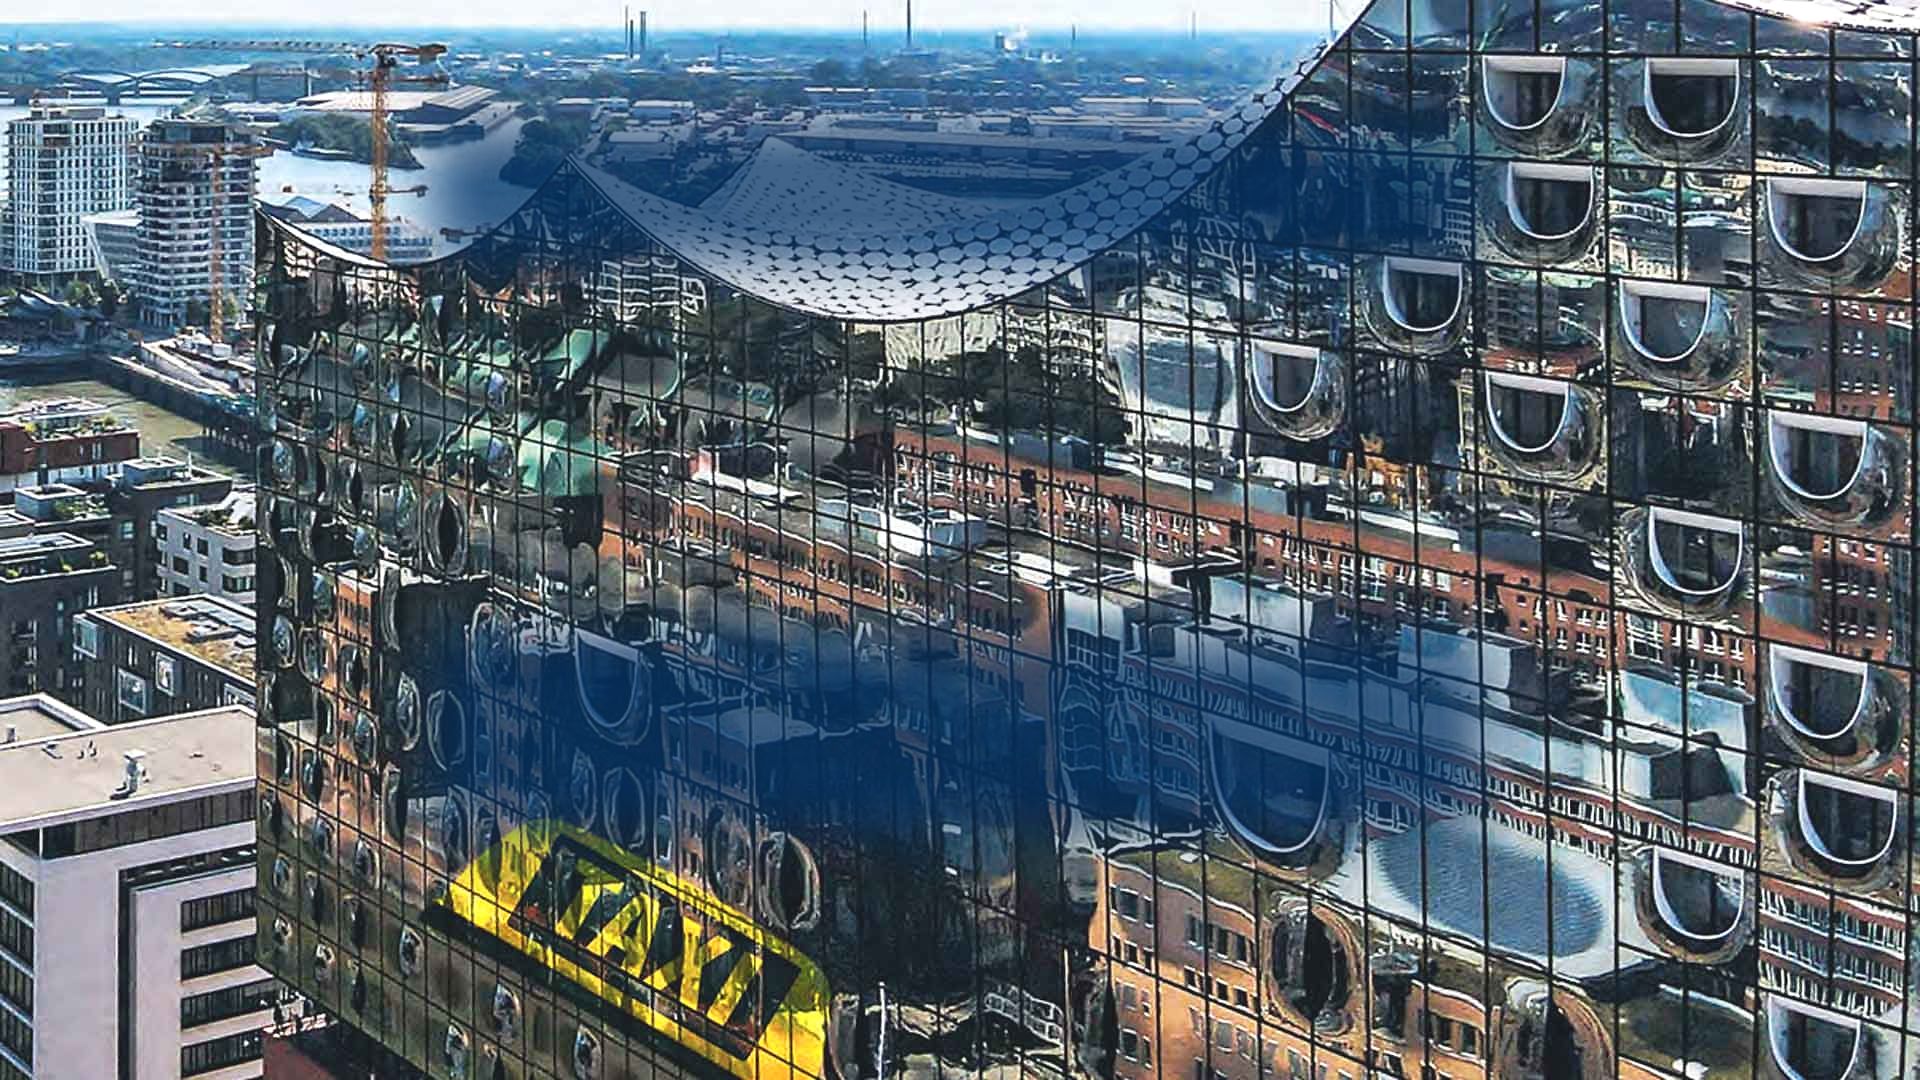  Reflektion eines Taxi an der Fassade der Elbphilharmonie Hamburg 